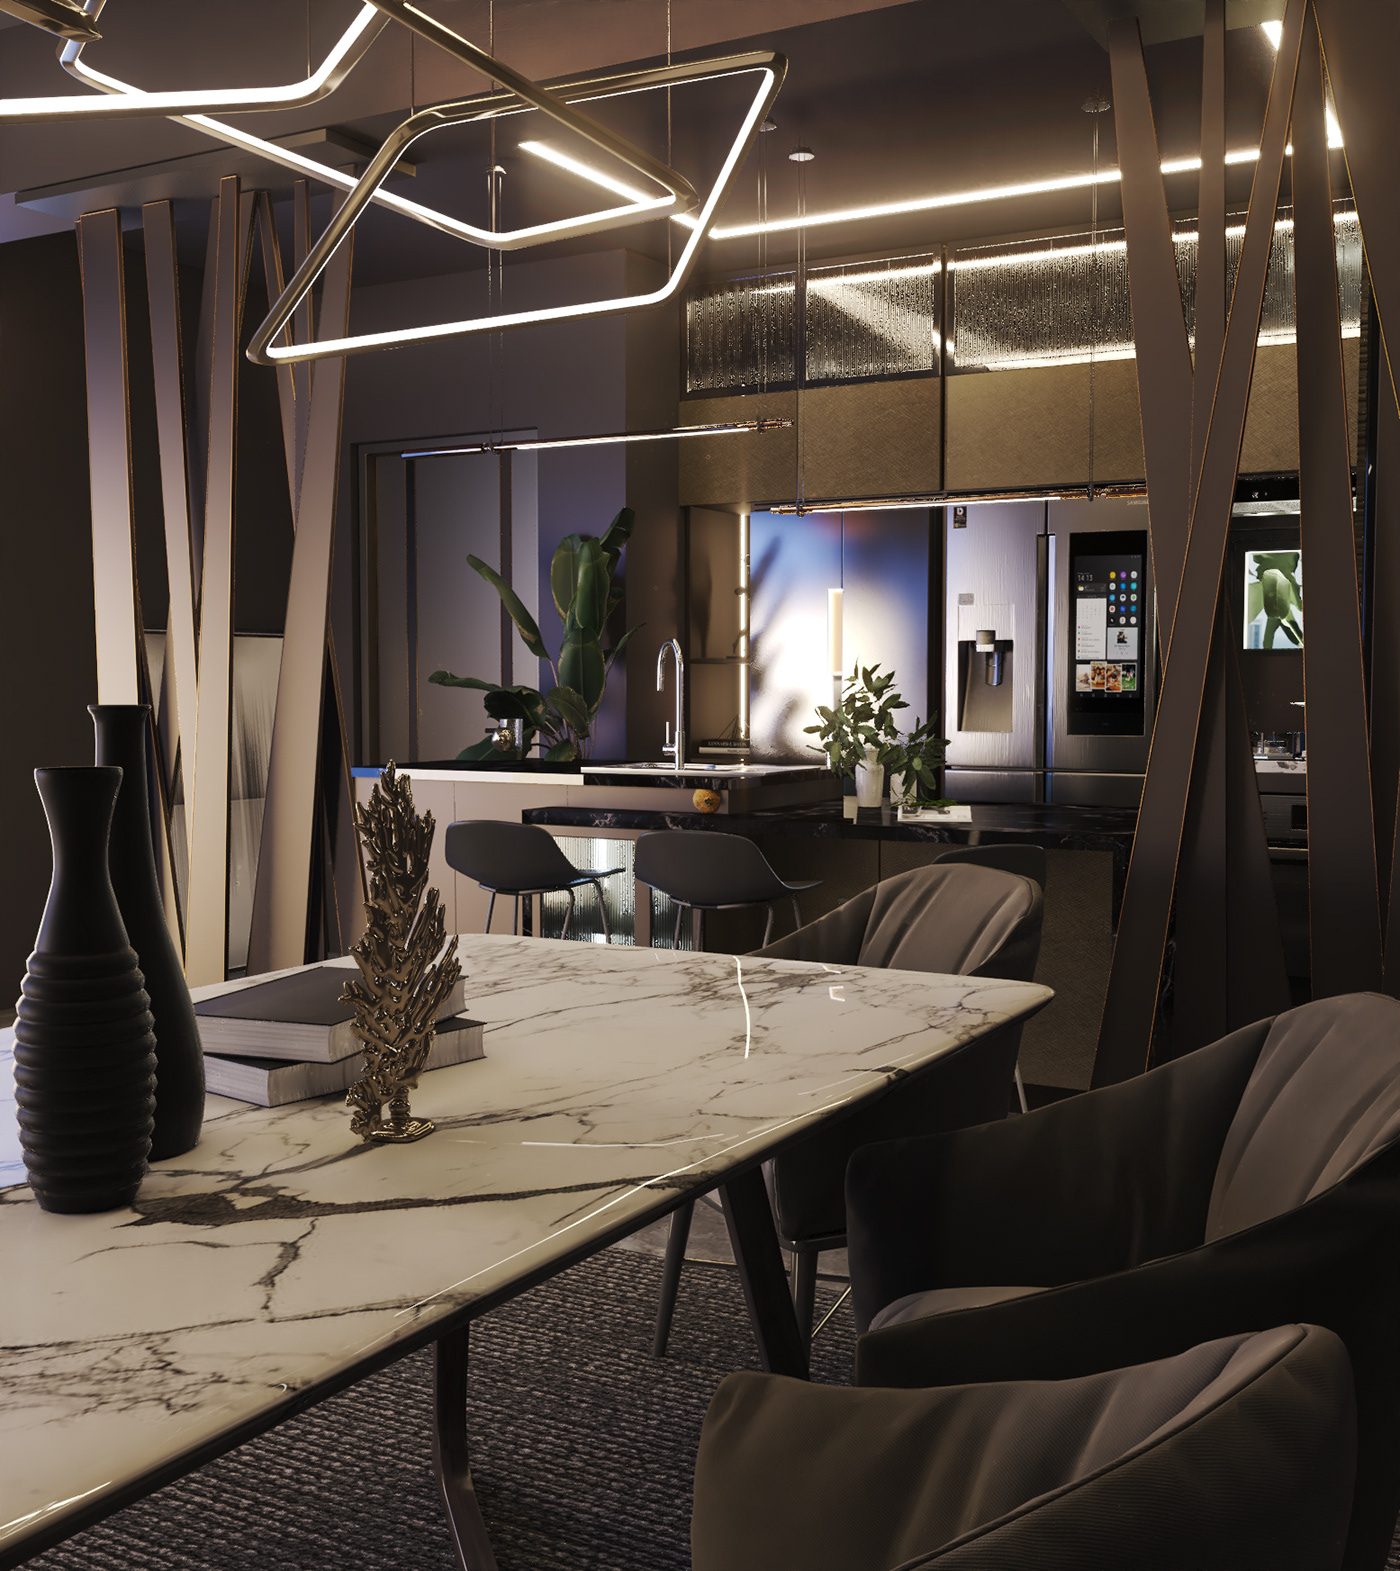 kitchen Interior model partion partion design dinning room luxury